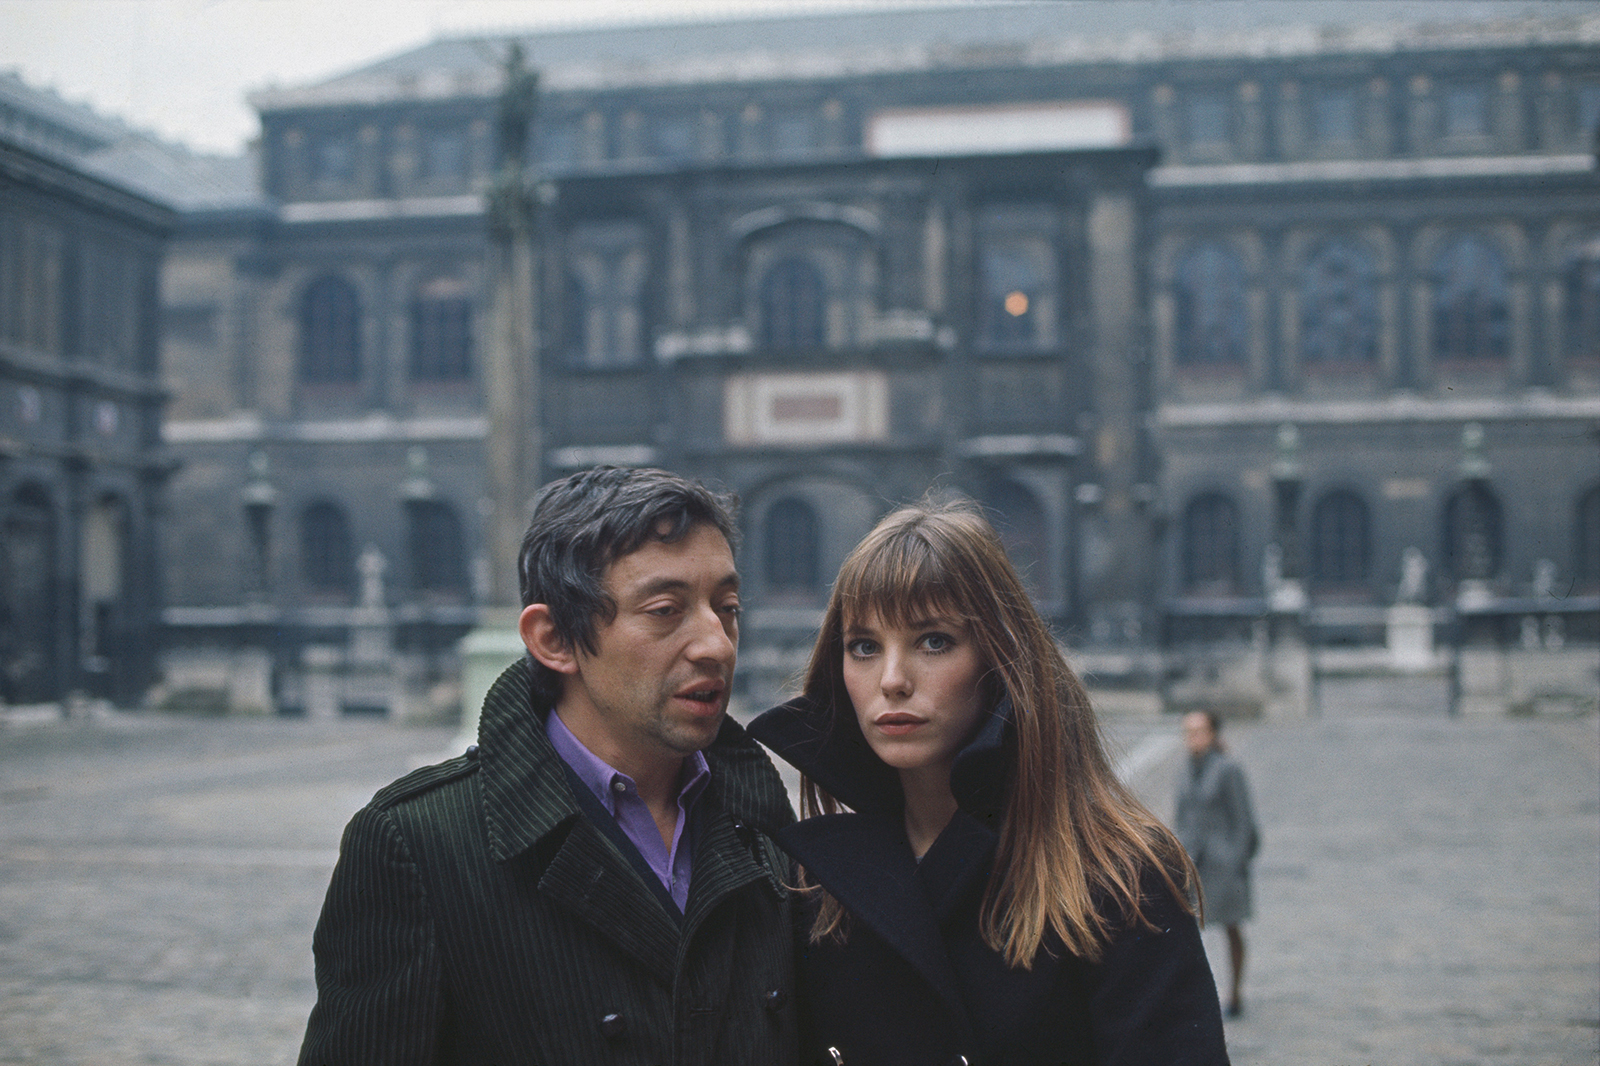 Serge Gainsbourg and Jane Birkin in Paris, 1969.